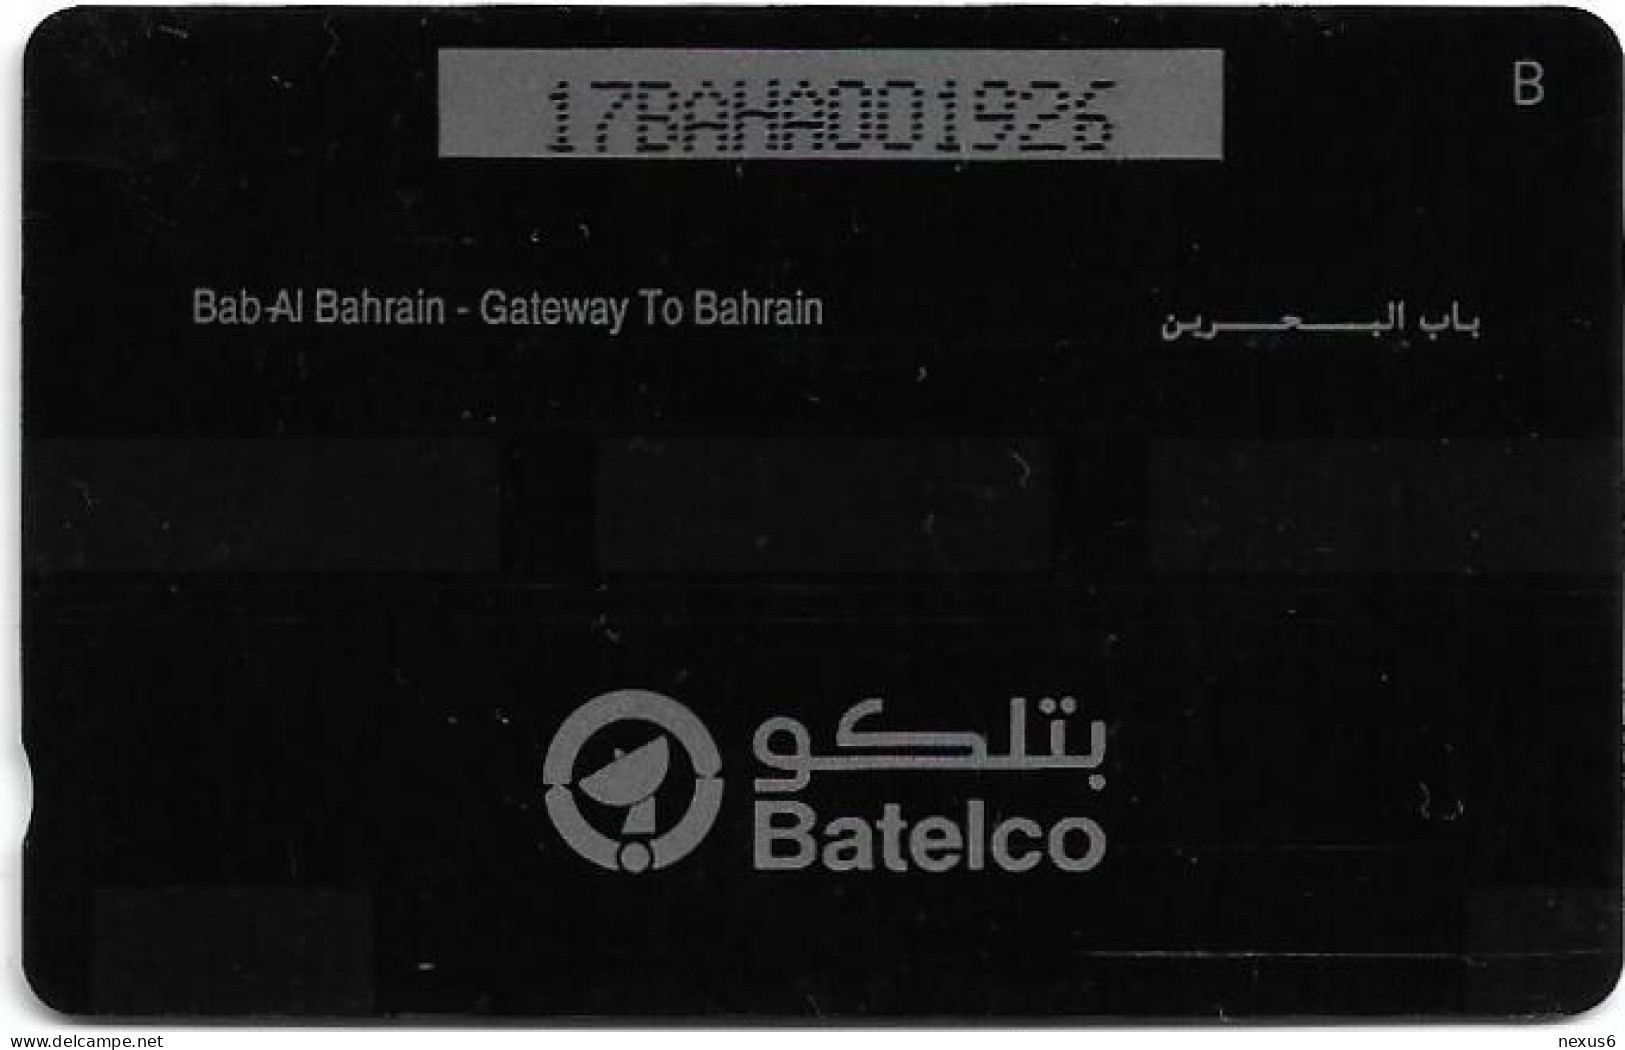 Bahrain - Batelco (GPT) - Gateway To Bahrain - 17BAHA - 1993, 130.000ex, Used - Baharain